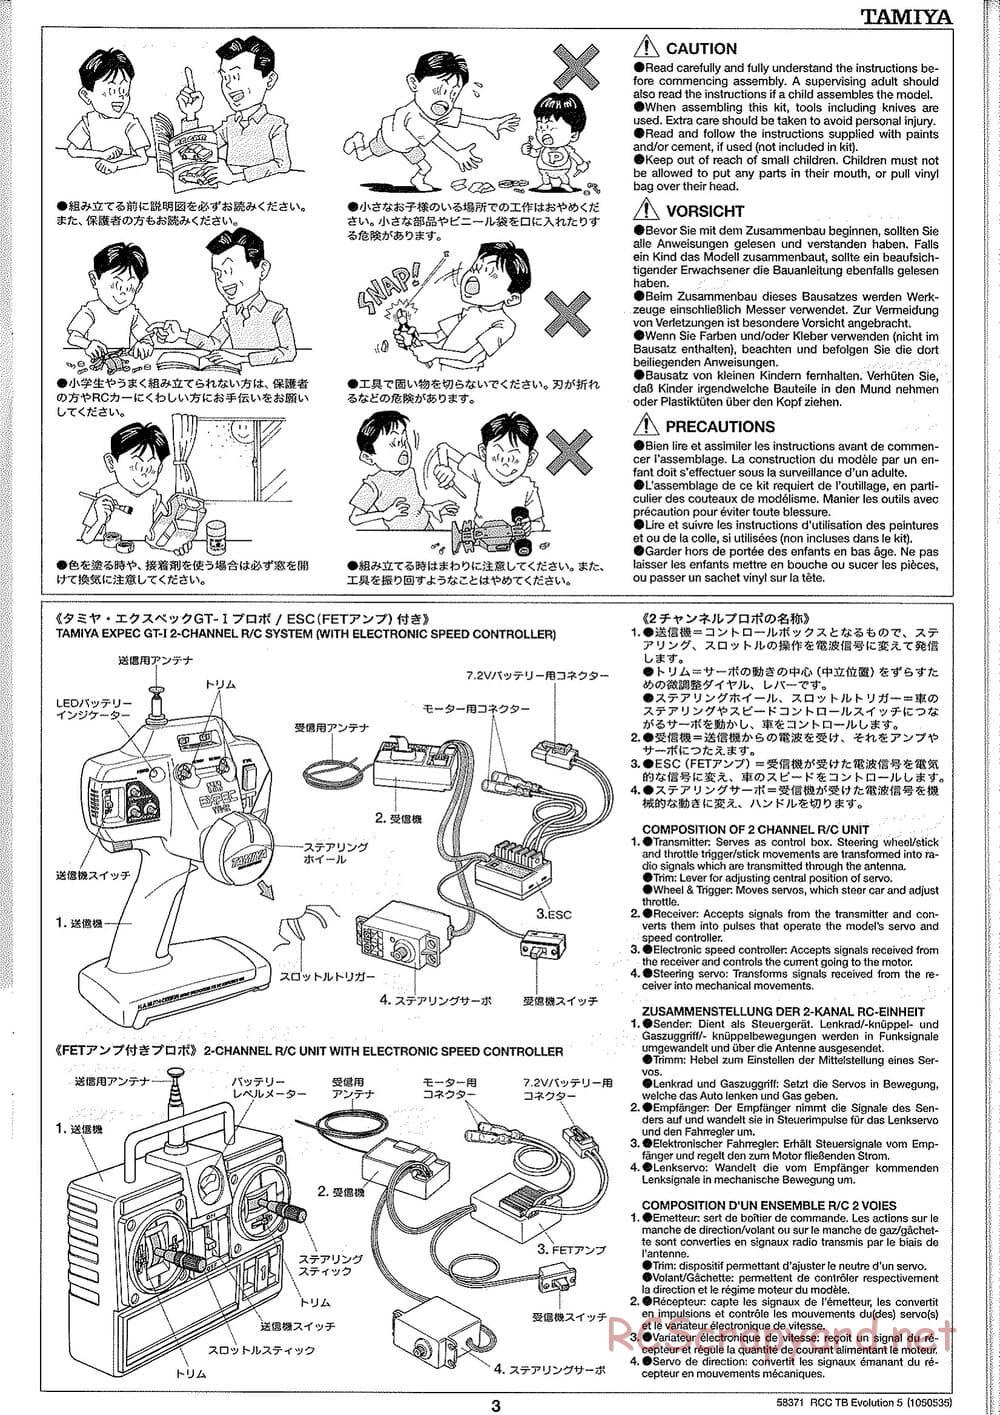 Tamiya - TB Evolution V Chassis - Manual - Page 3